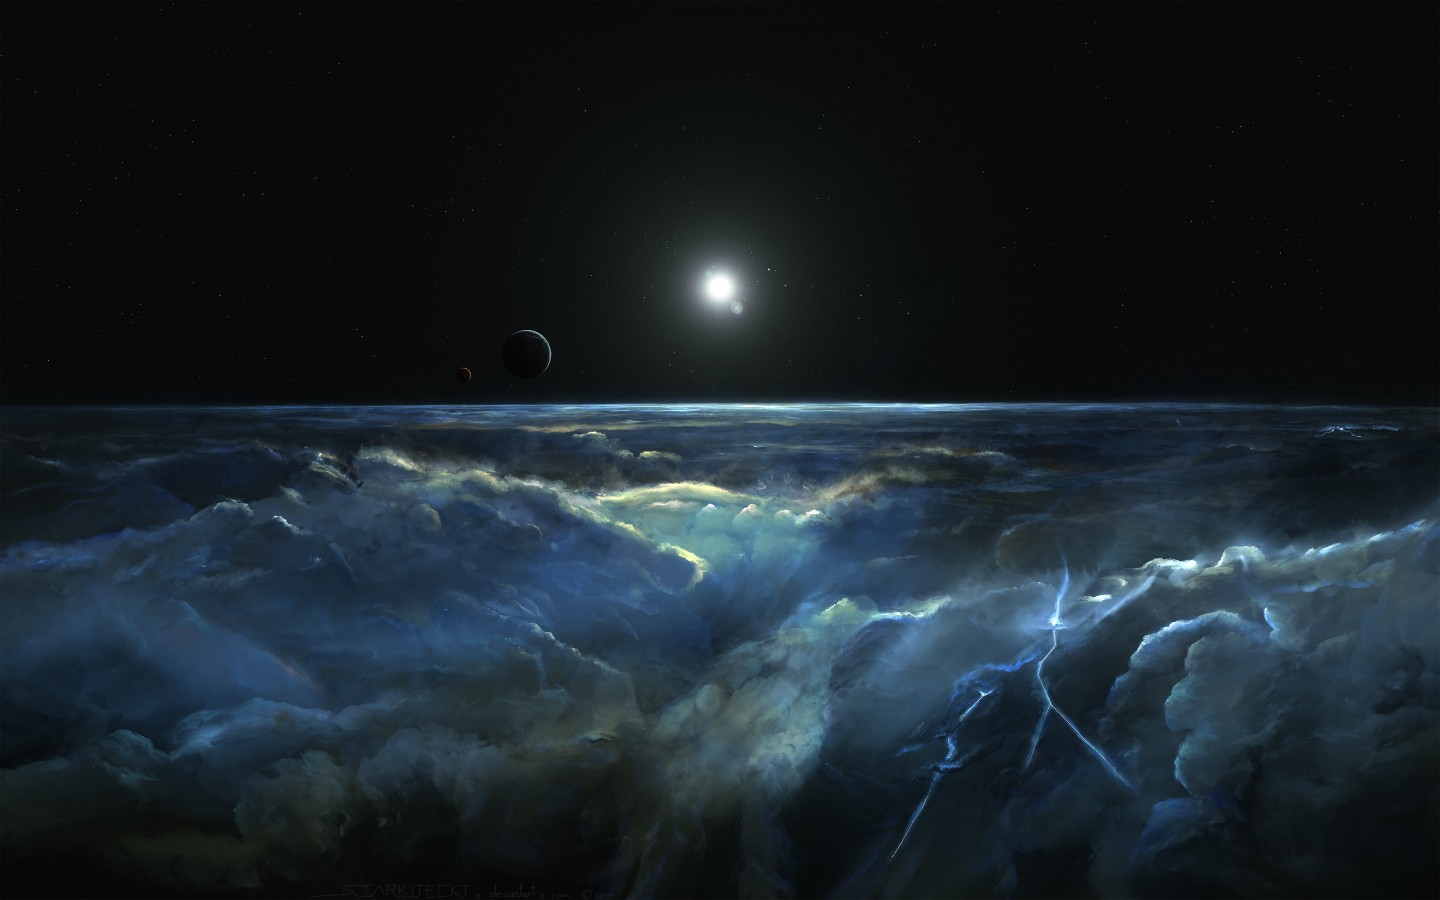 Stormy Atmosphere of Merphlyn Wallpaper for Desktop 1440x900